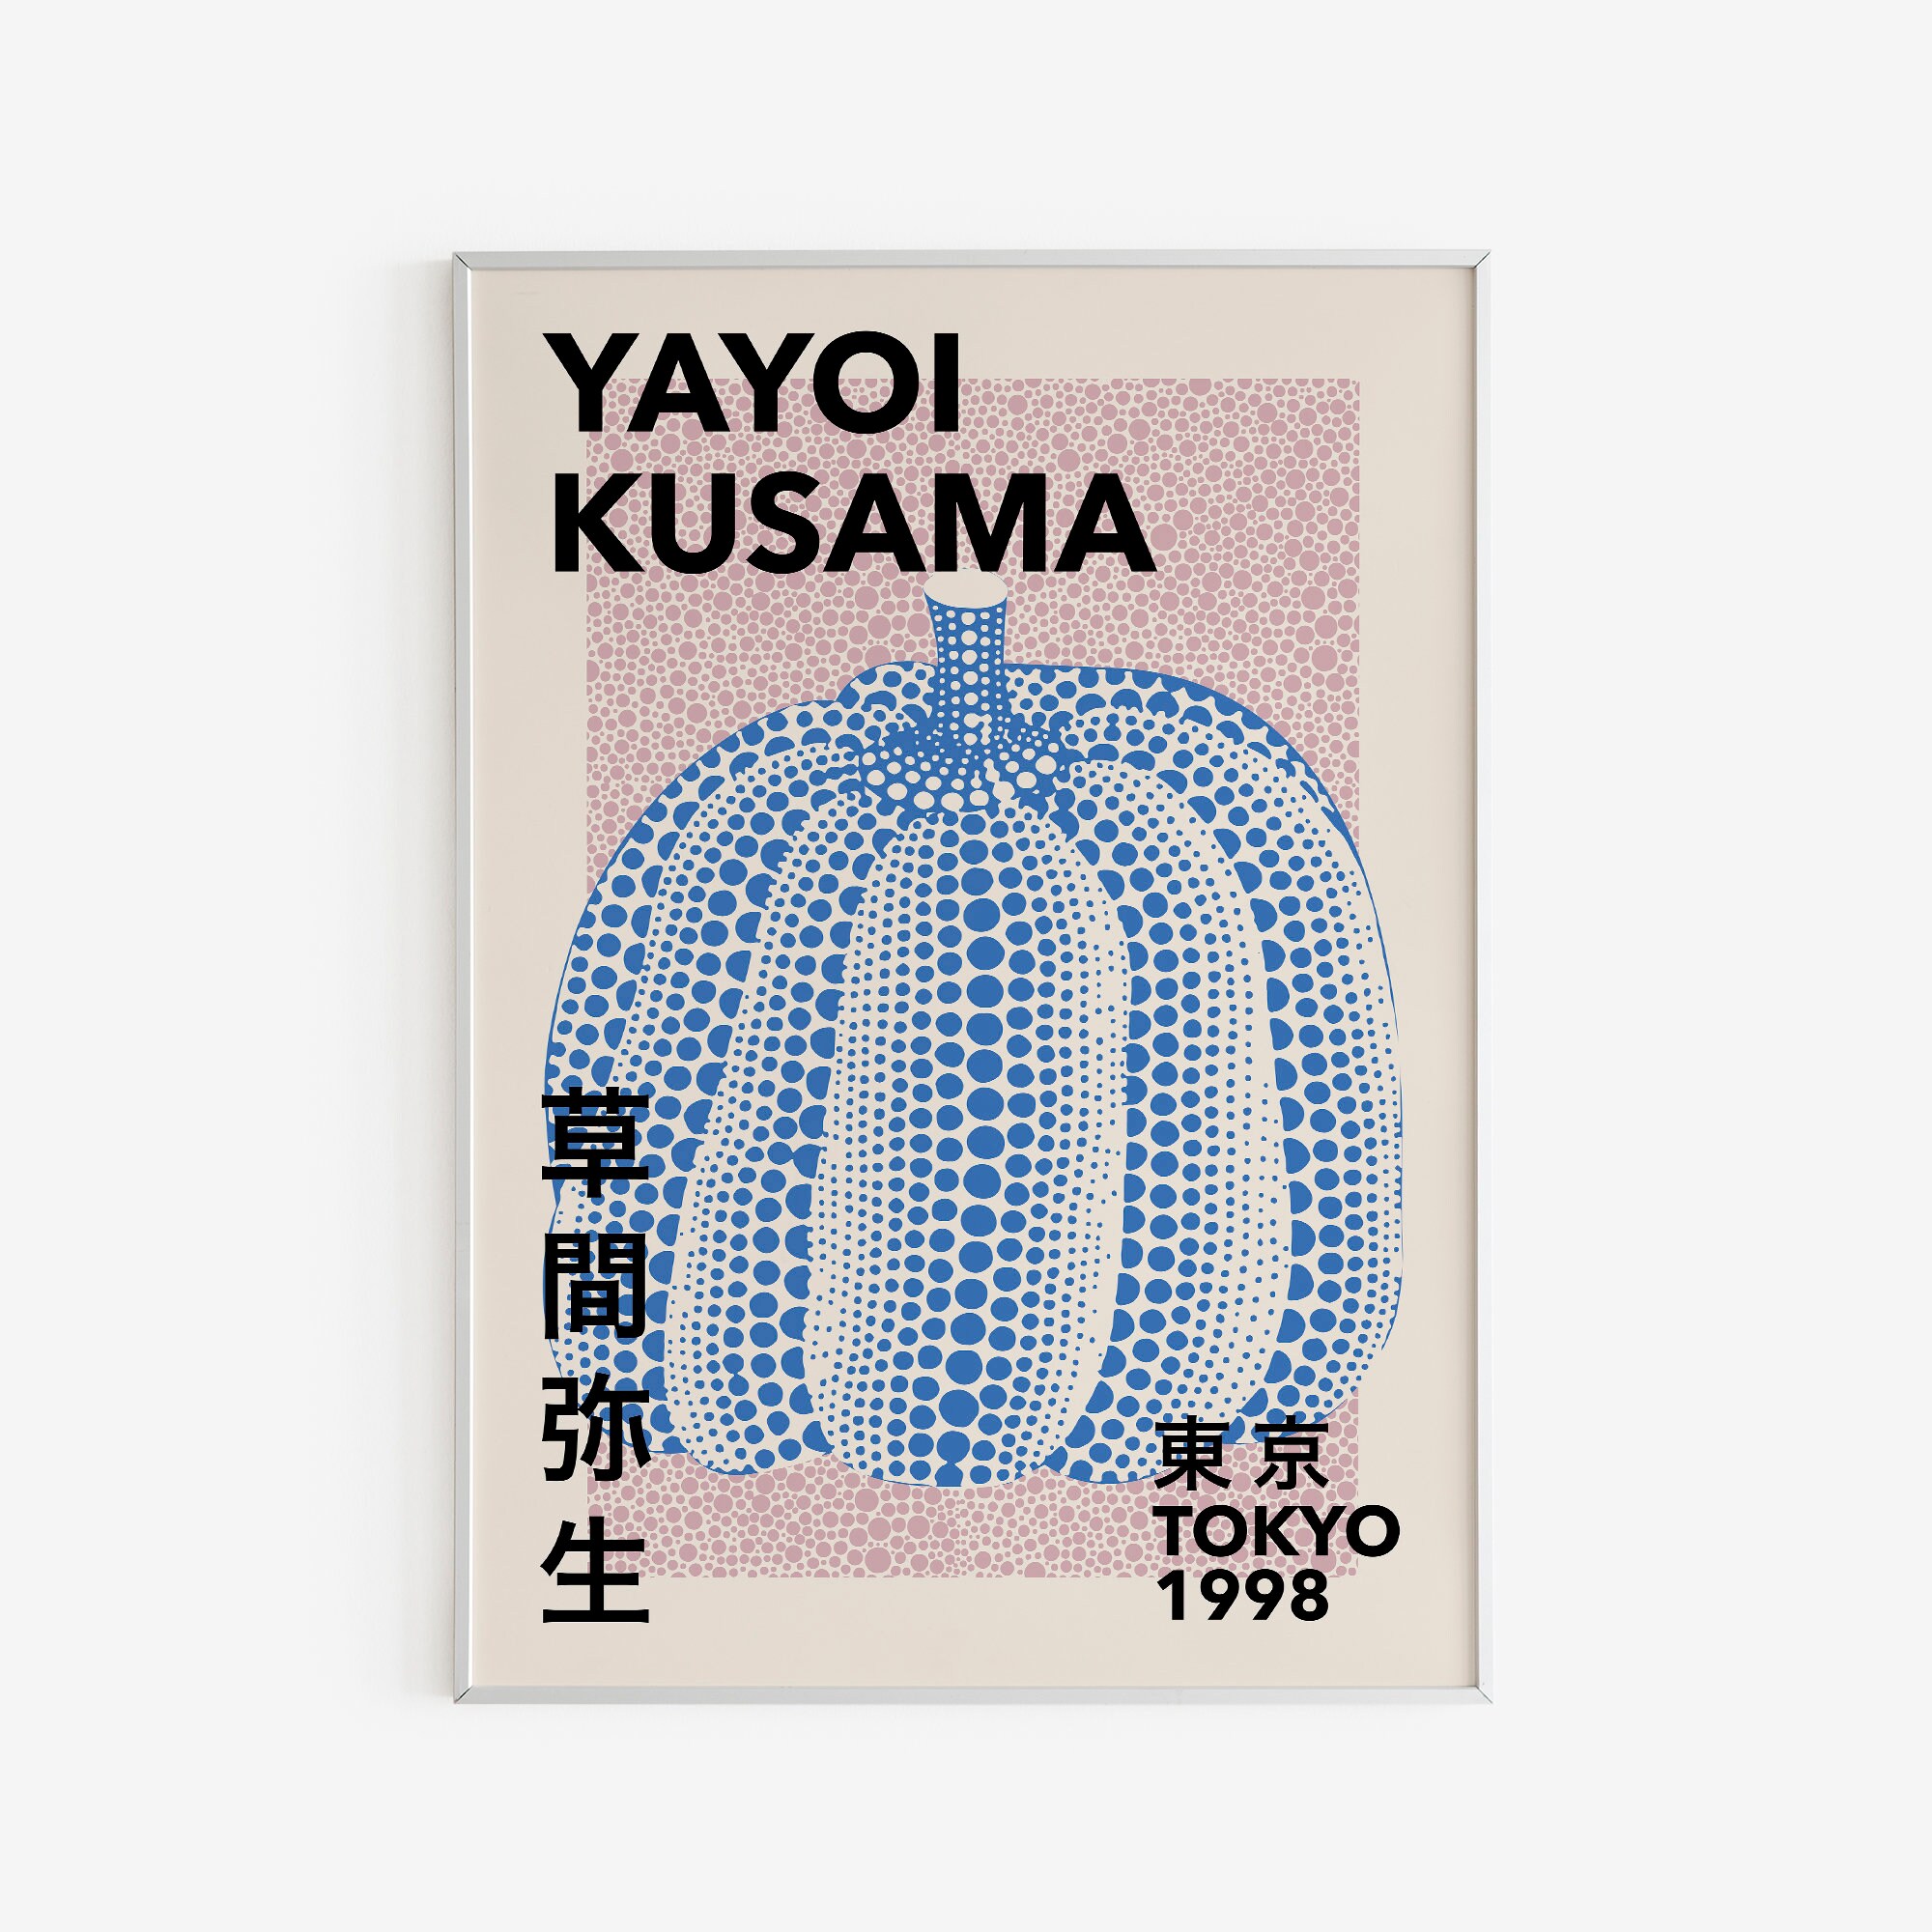 Yayoi KUSAMA, Pumpkin, 1998